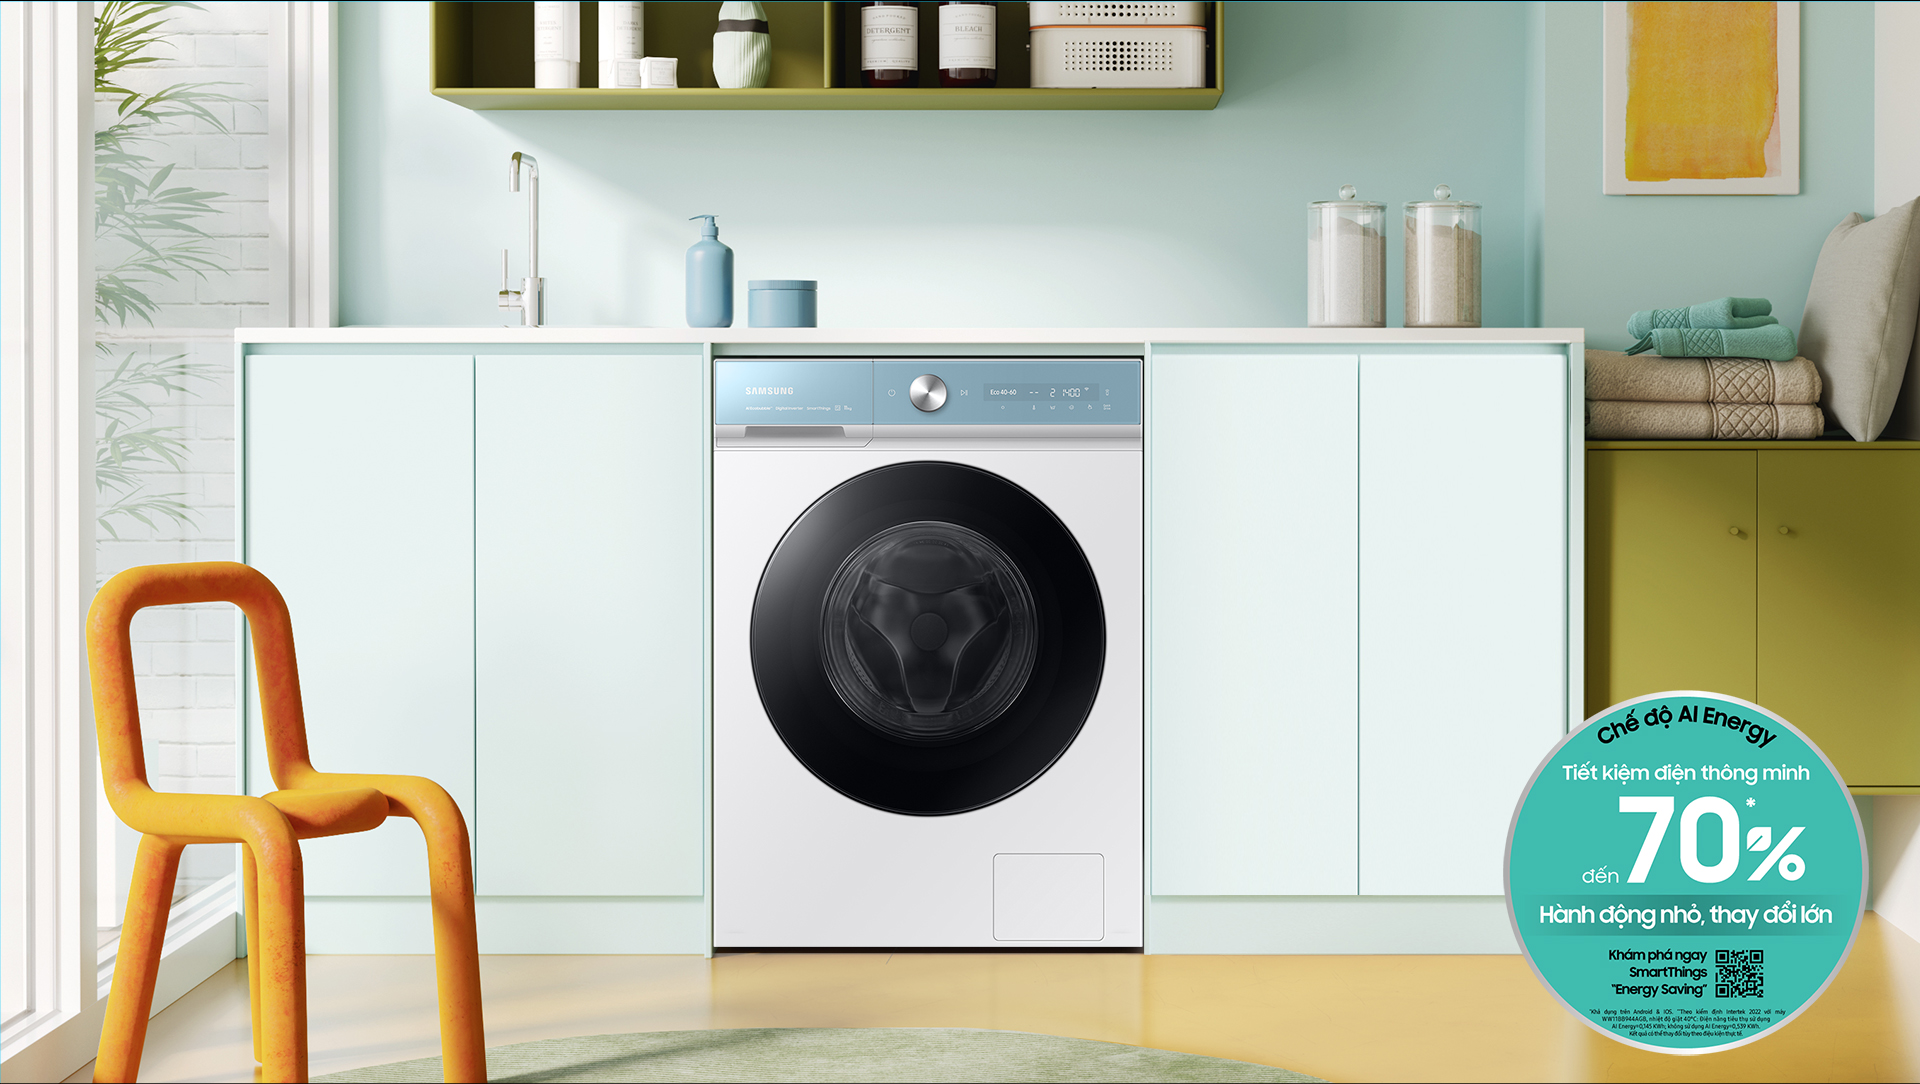 Máy giặt thông minh Samsung Bespoke AI ra mắt: Vừa phân biệt chất liệu vải, vừa tự động tính lượng nước giặt - Ảnh 5.